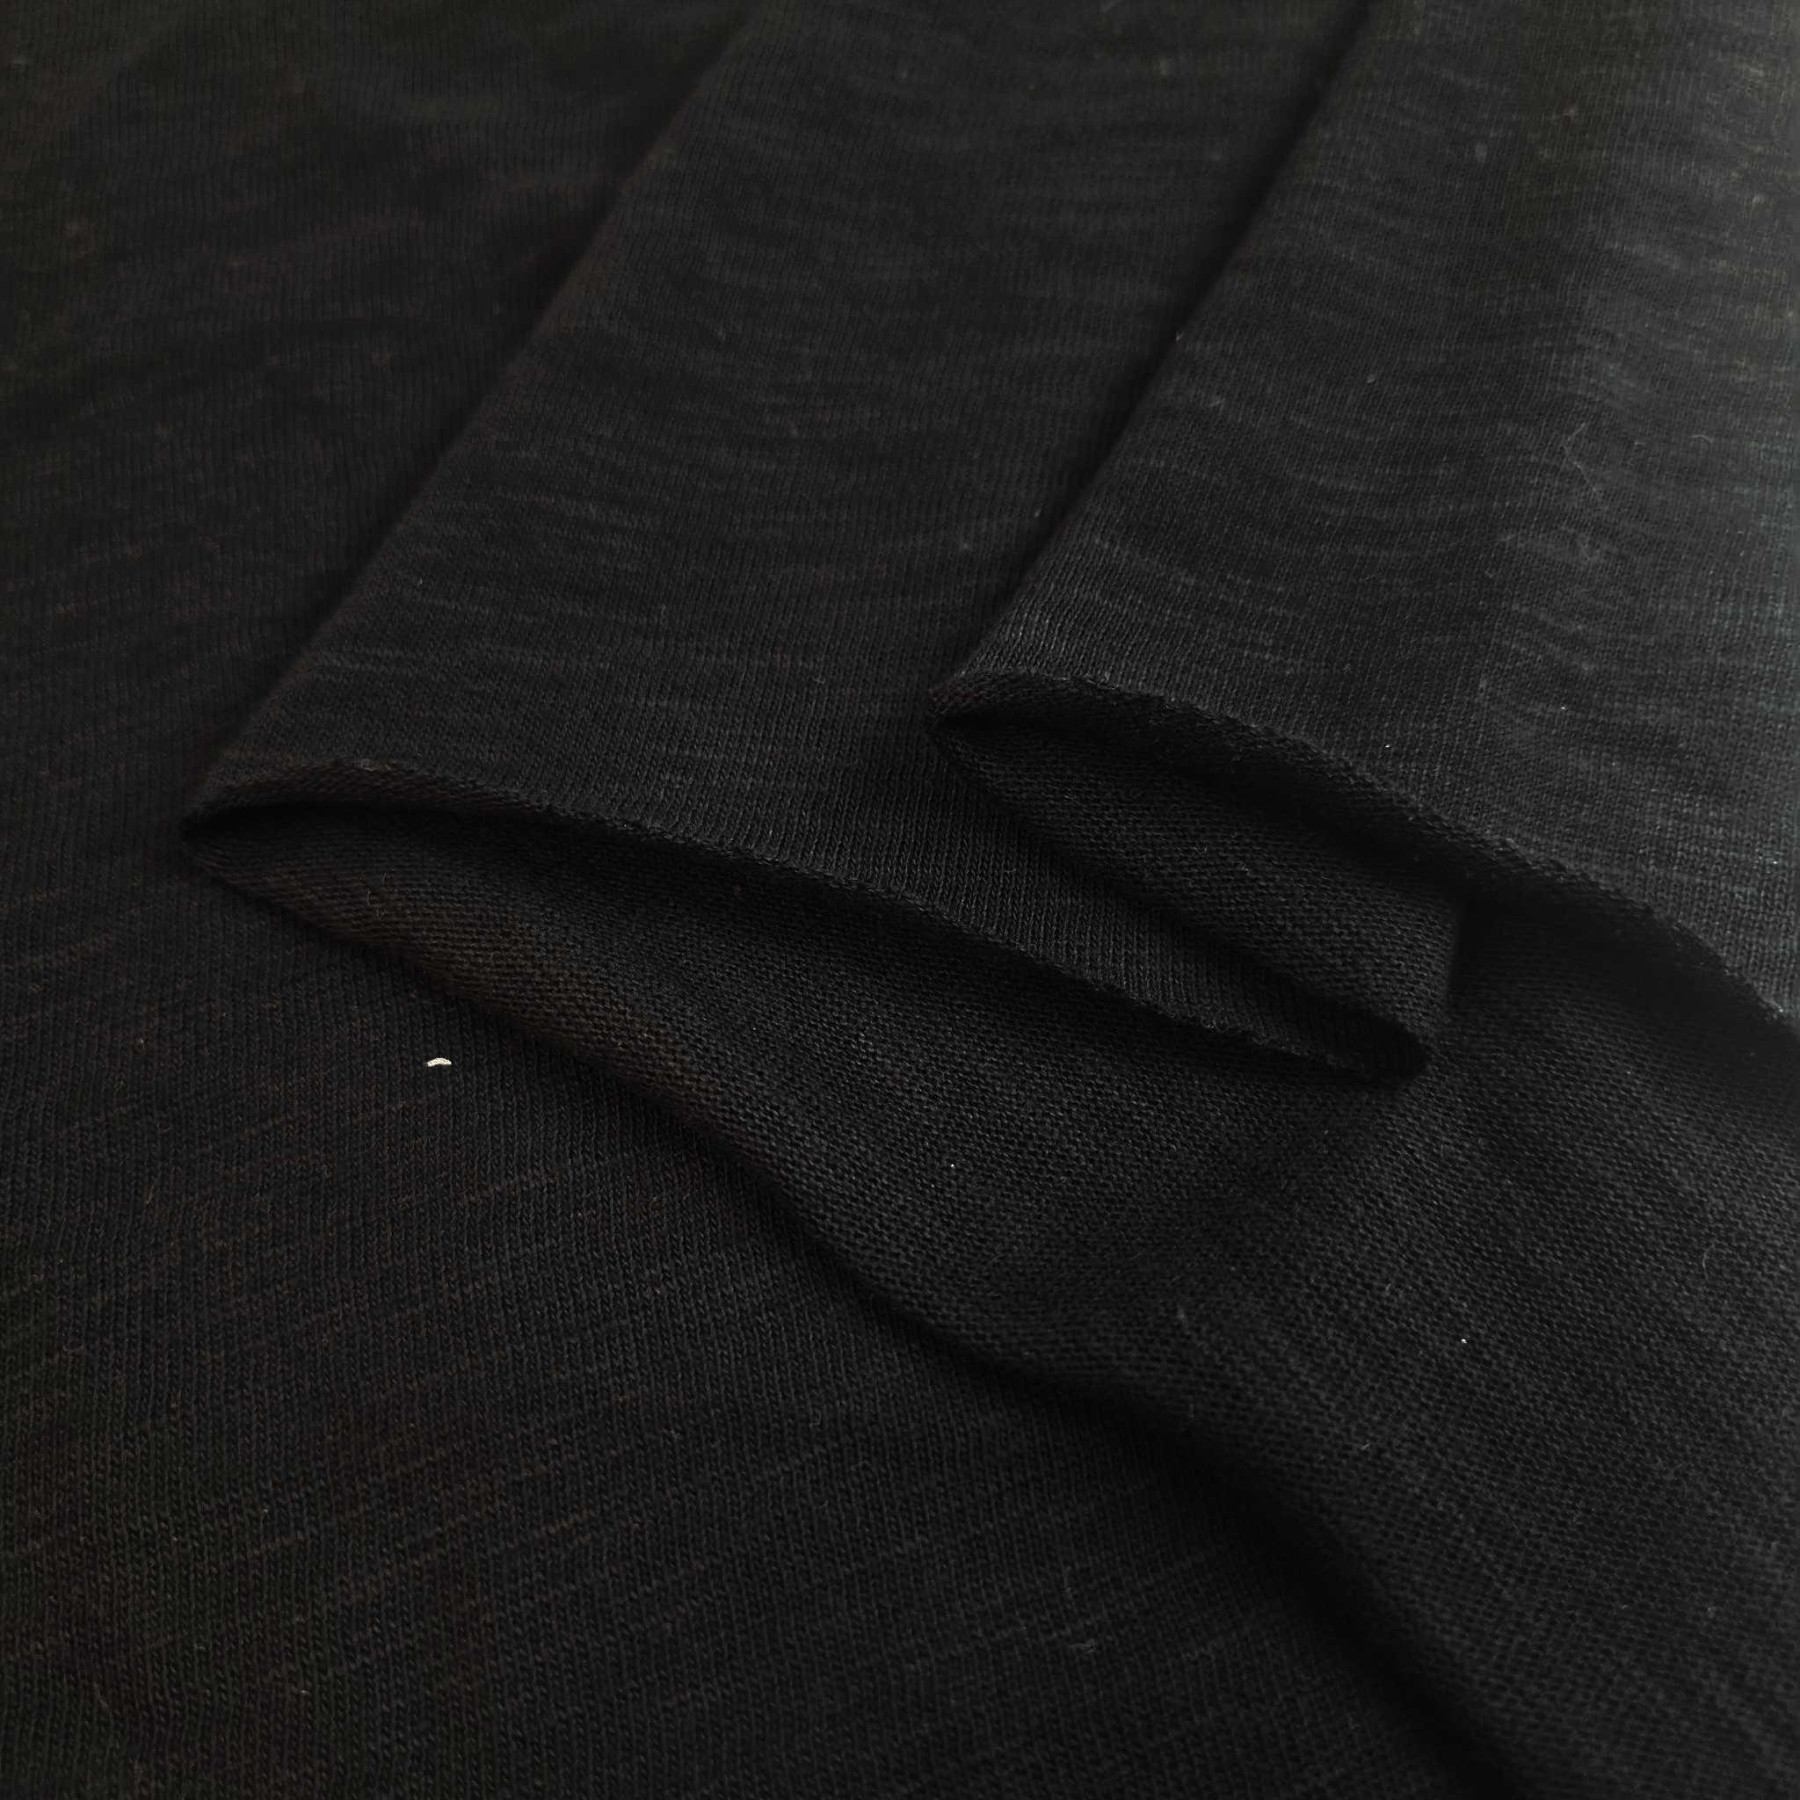 PŁOMYK jersey bawełniany - Czarny